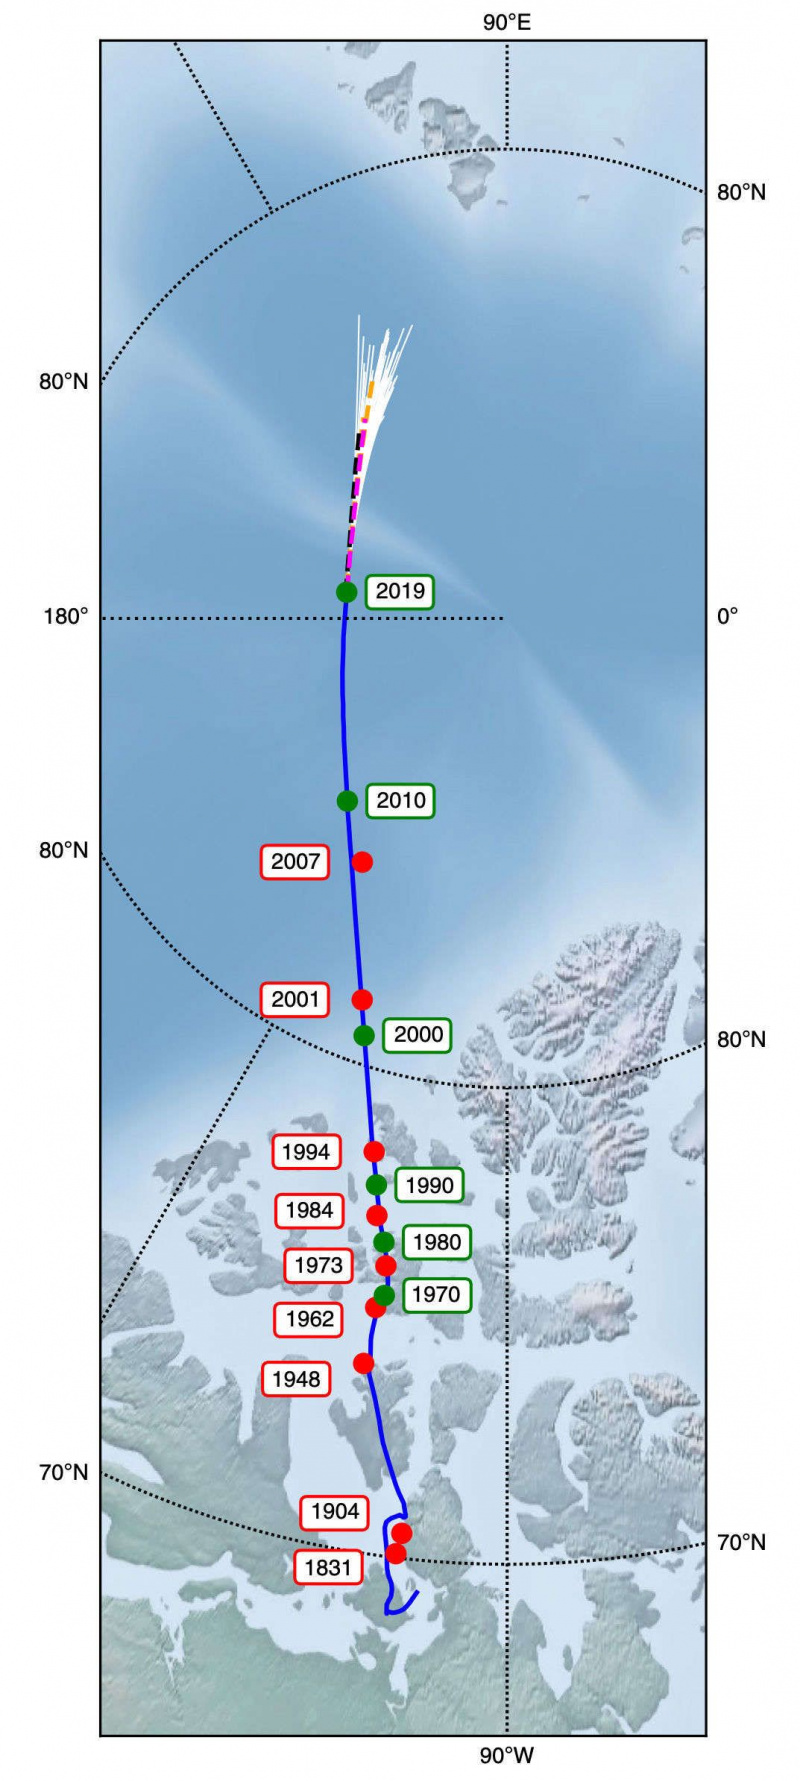 Il polo magnetico terrestre vaga mentre le forze sotterranee interagiscono. I modelli mostrano la posizione prevista dopo il 2019 (le linee bianche divergenti in alto). Credito: Livermore et al.